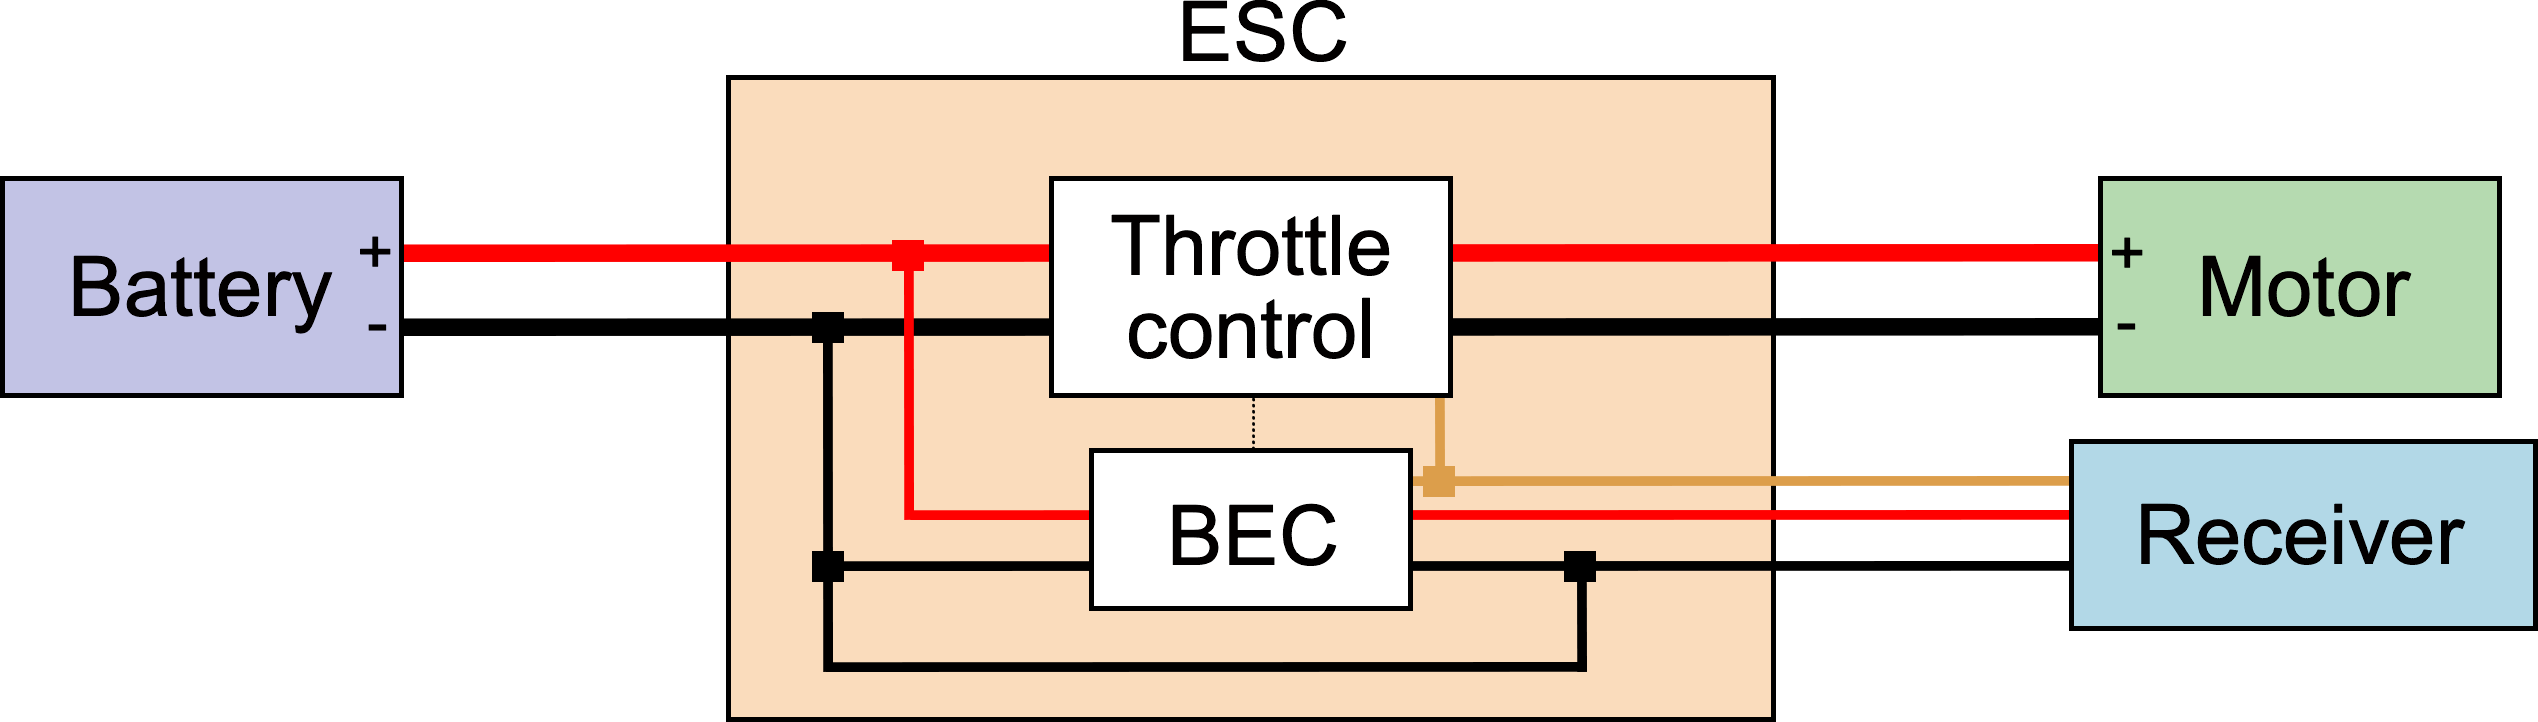 ESC wiring diagram